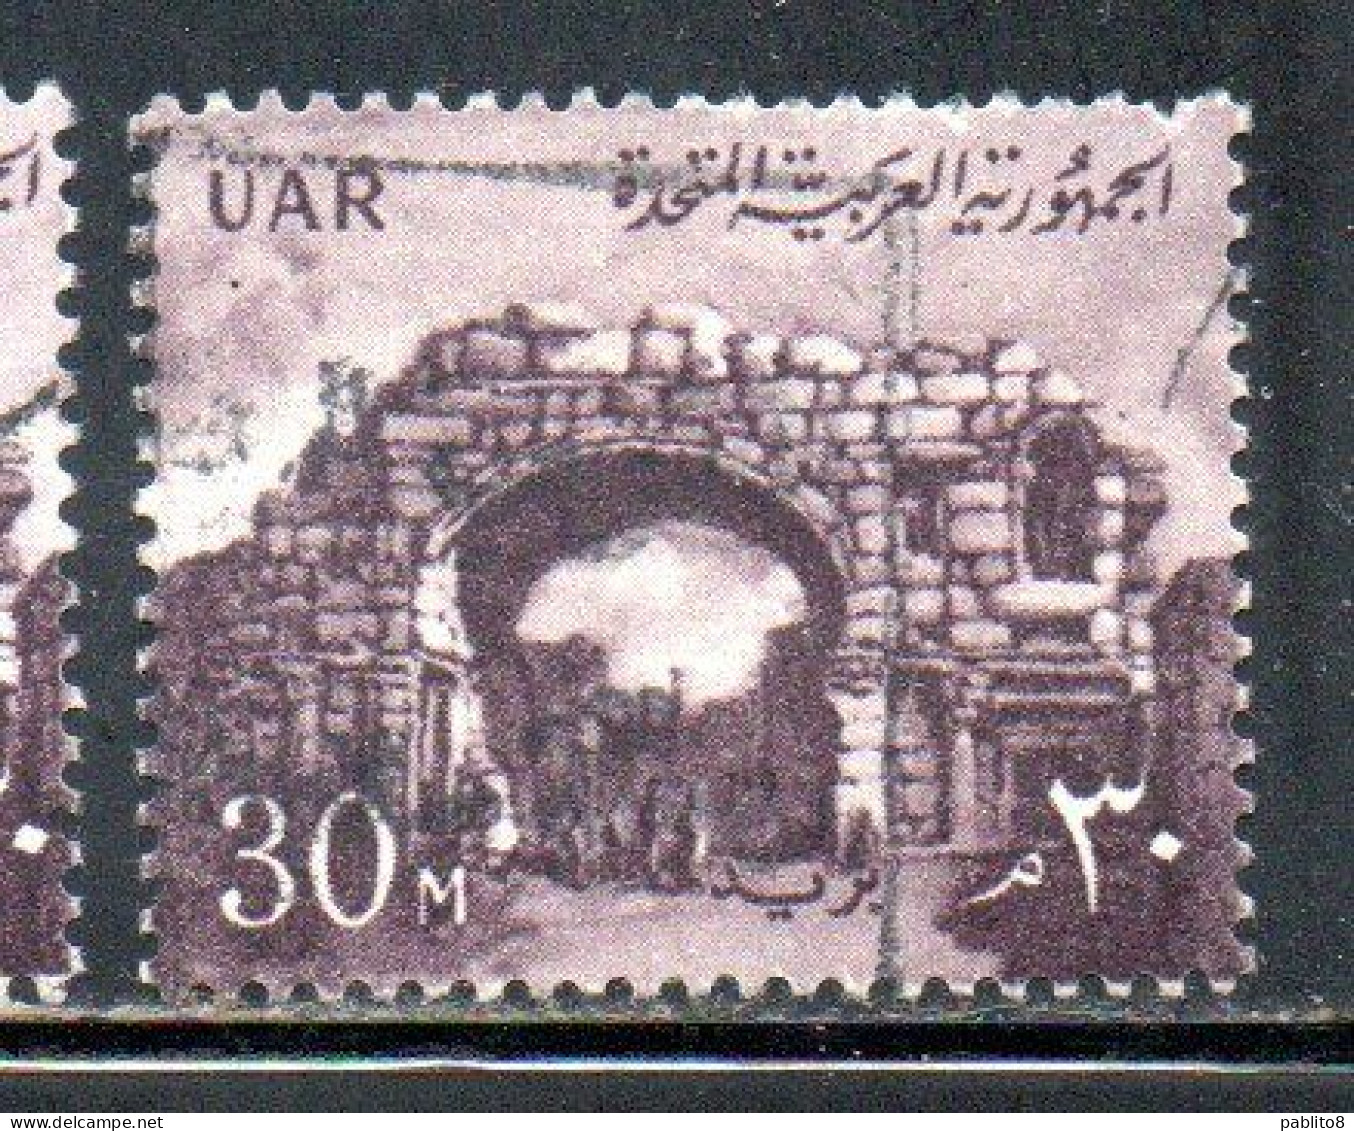 UAR EGYPT EGITTO 1959 1960 ST. SIMON'S GATE BOSRA SYRIA  30m USED USATO OBLITERE' - Gebruikt